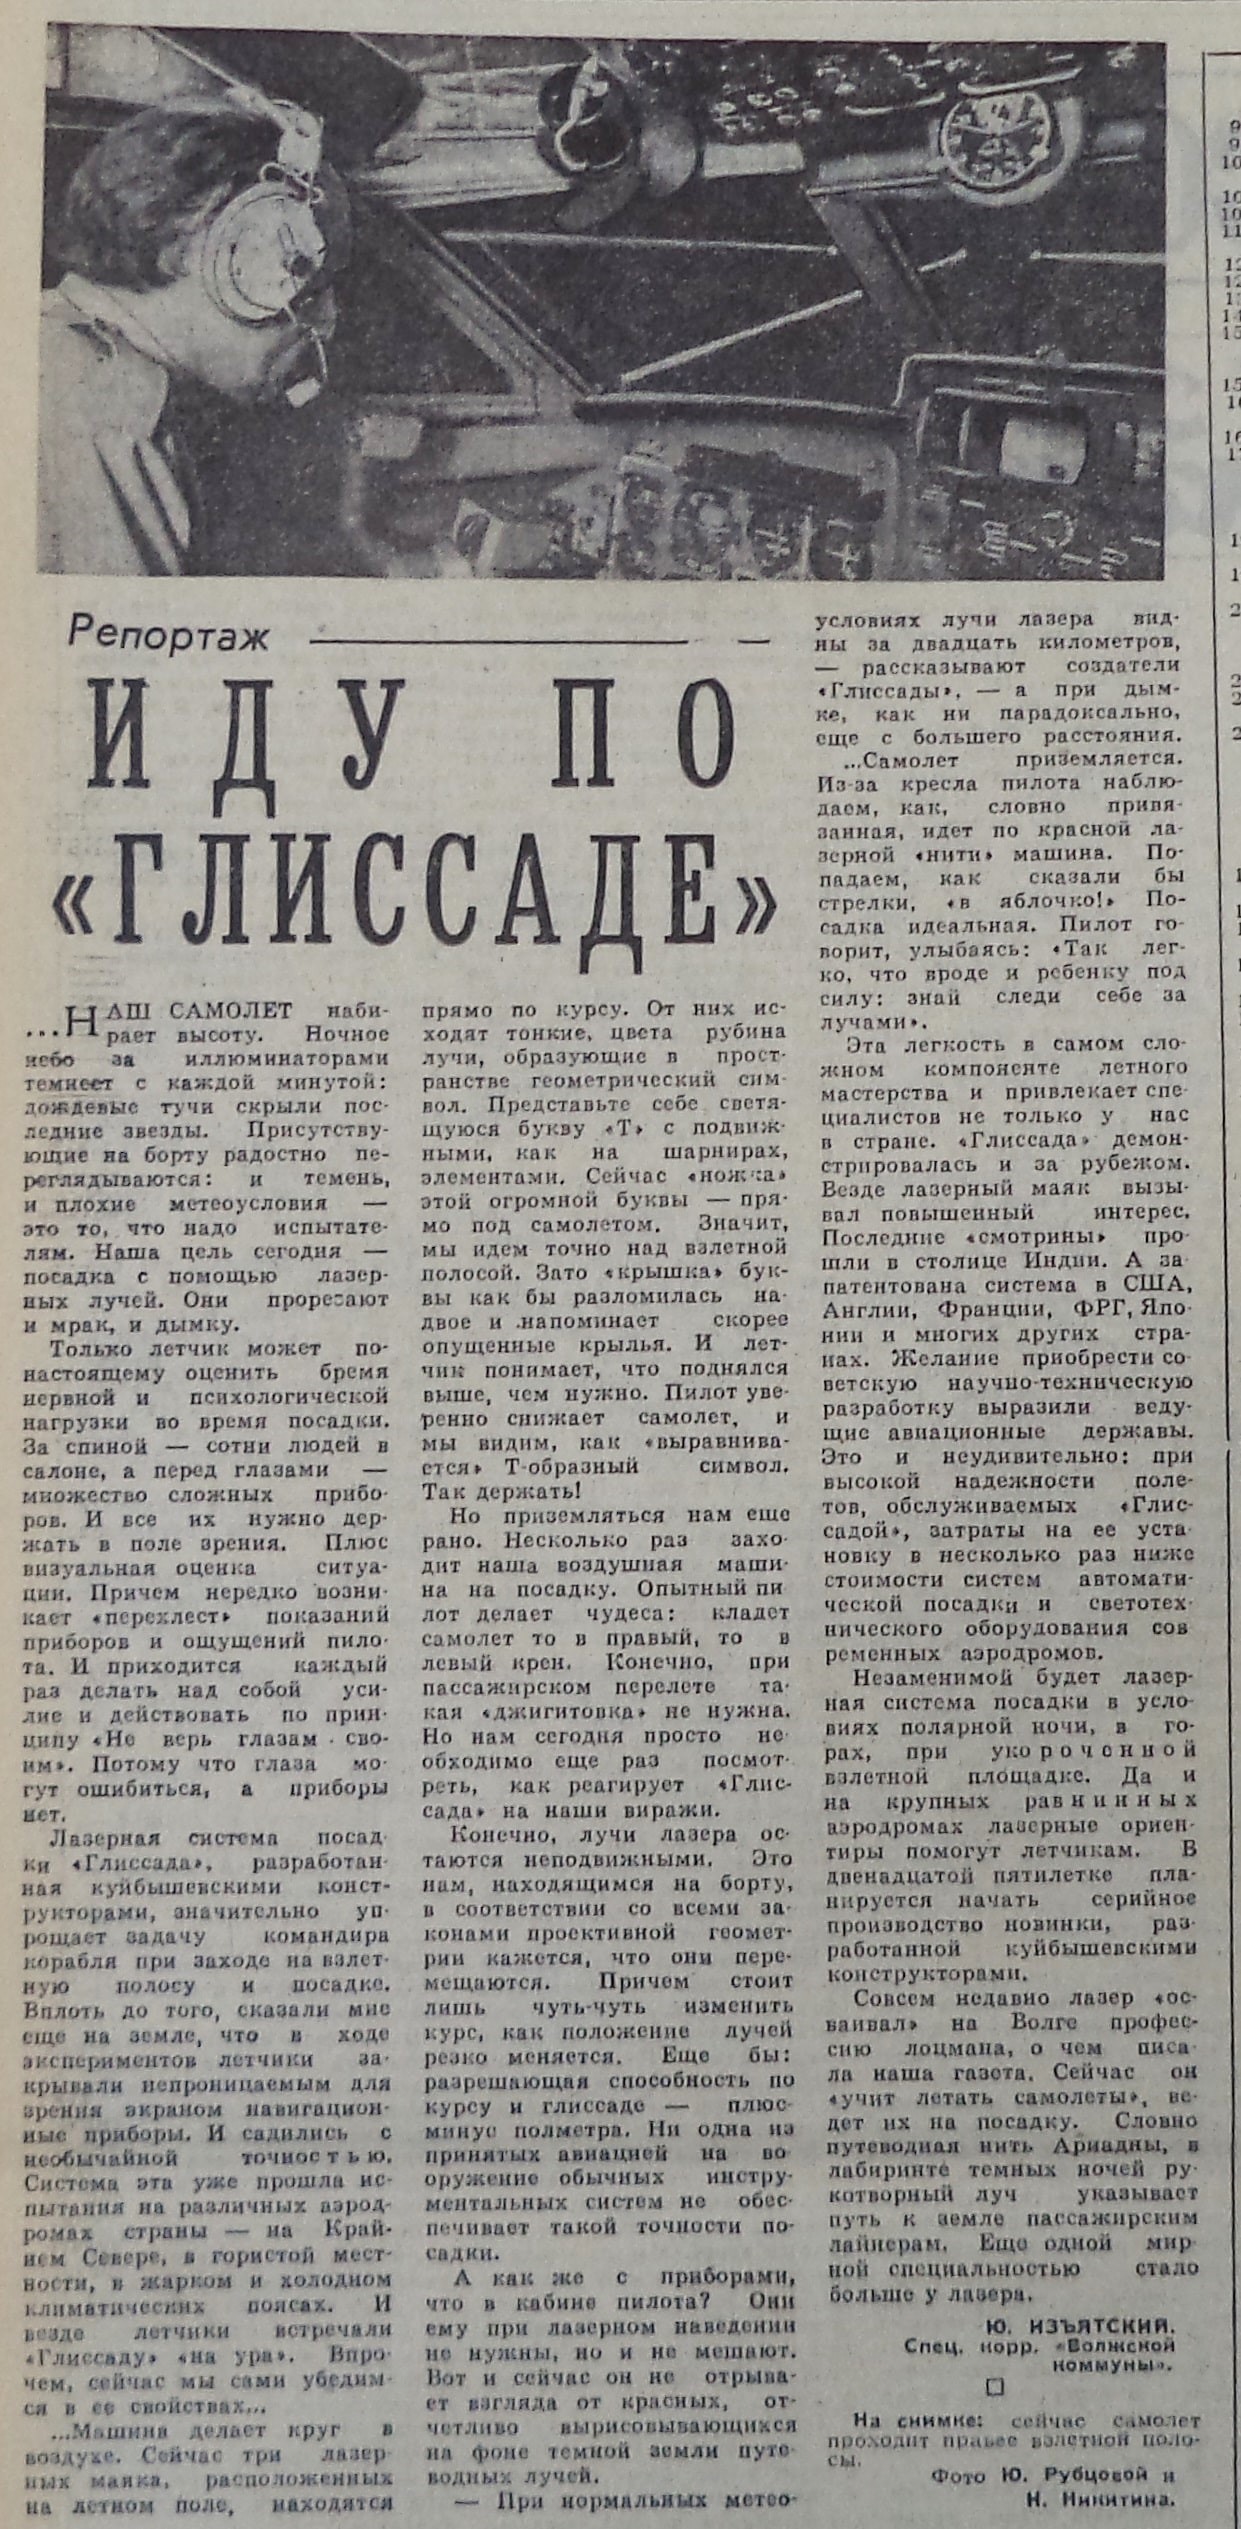 Смышляевское-ФОТО-16-ВКа-1986-05-31-о системе Глиссада-min